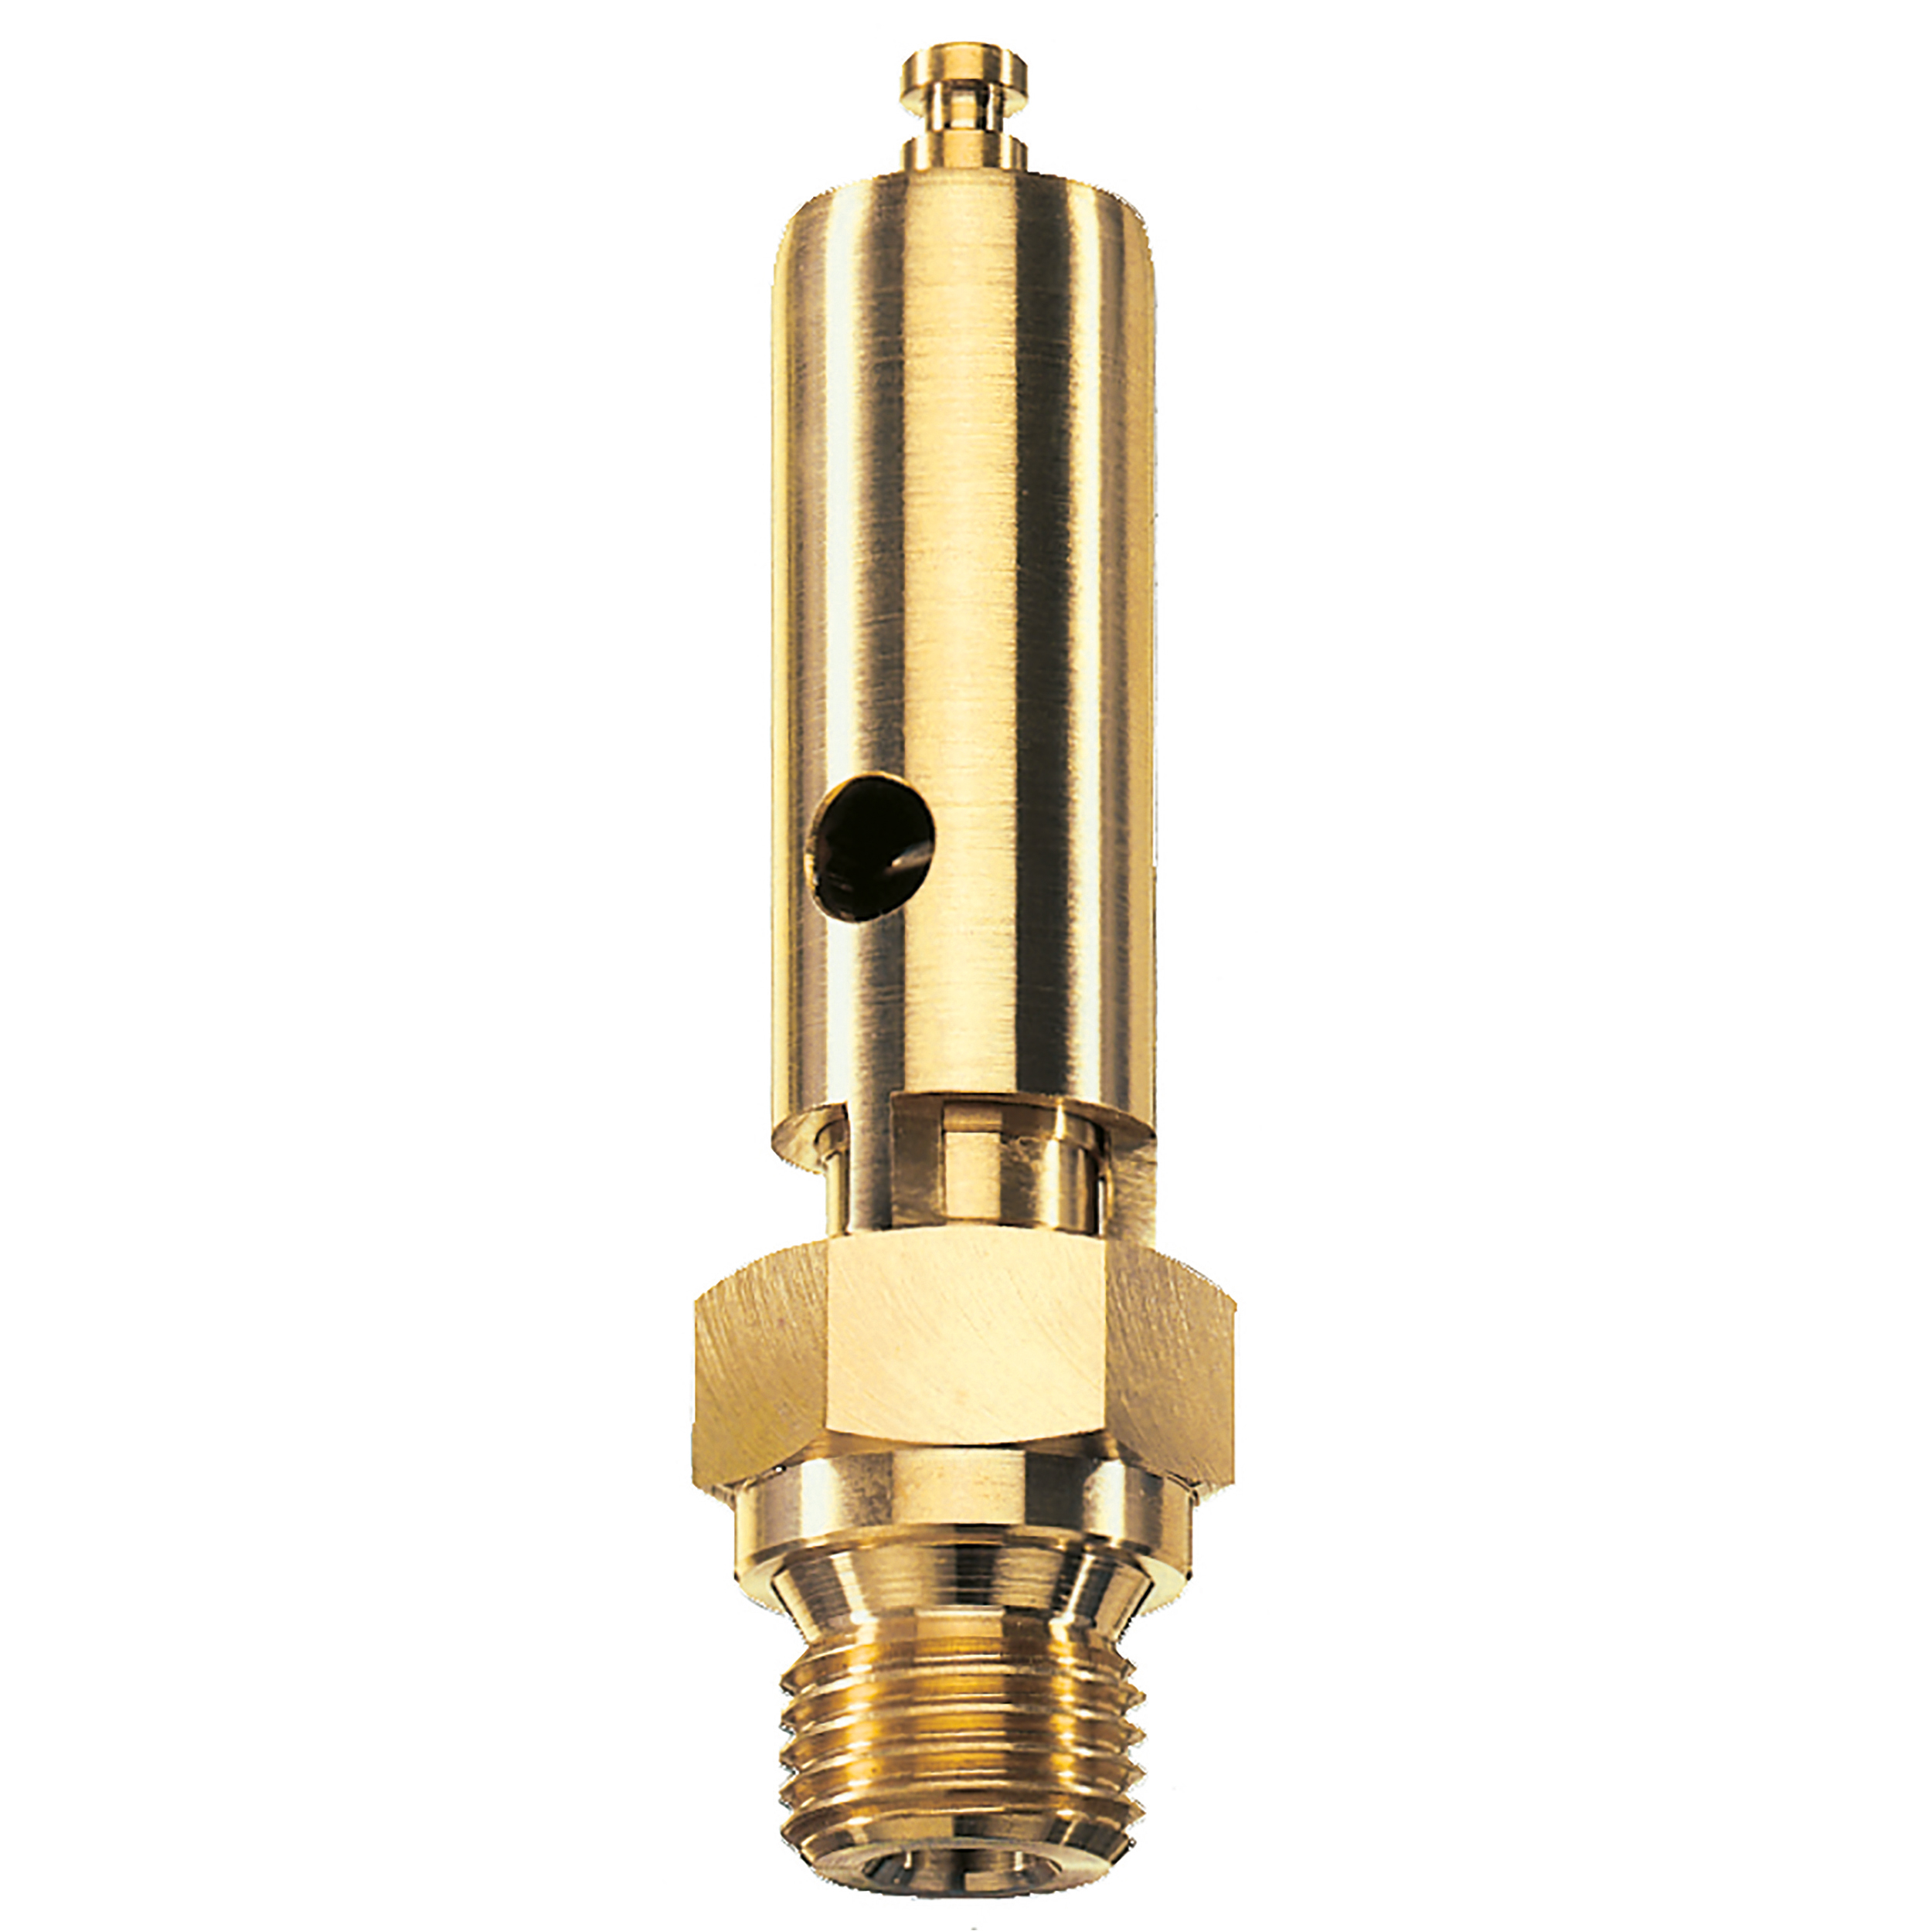 Savety valve component tested DN 6, G⅜, L: 60 mm, seal: FKM, set pressure: 22.4 bar (324,8 psi), TÜV approval